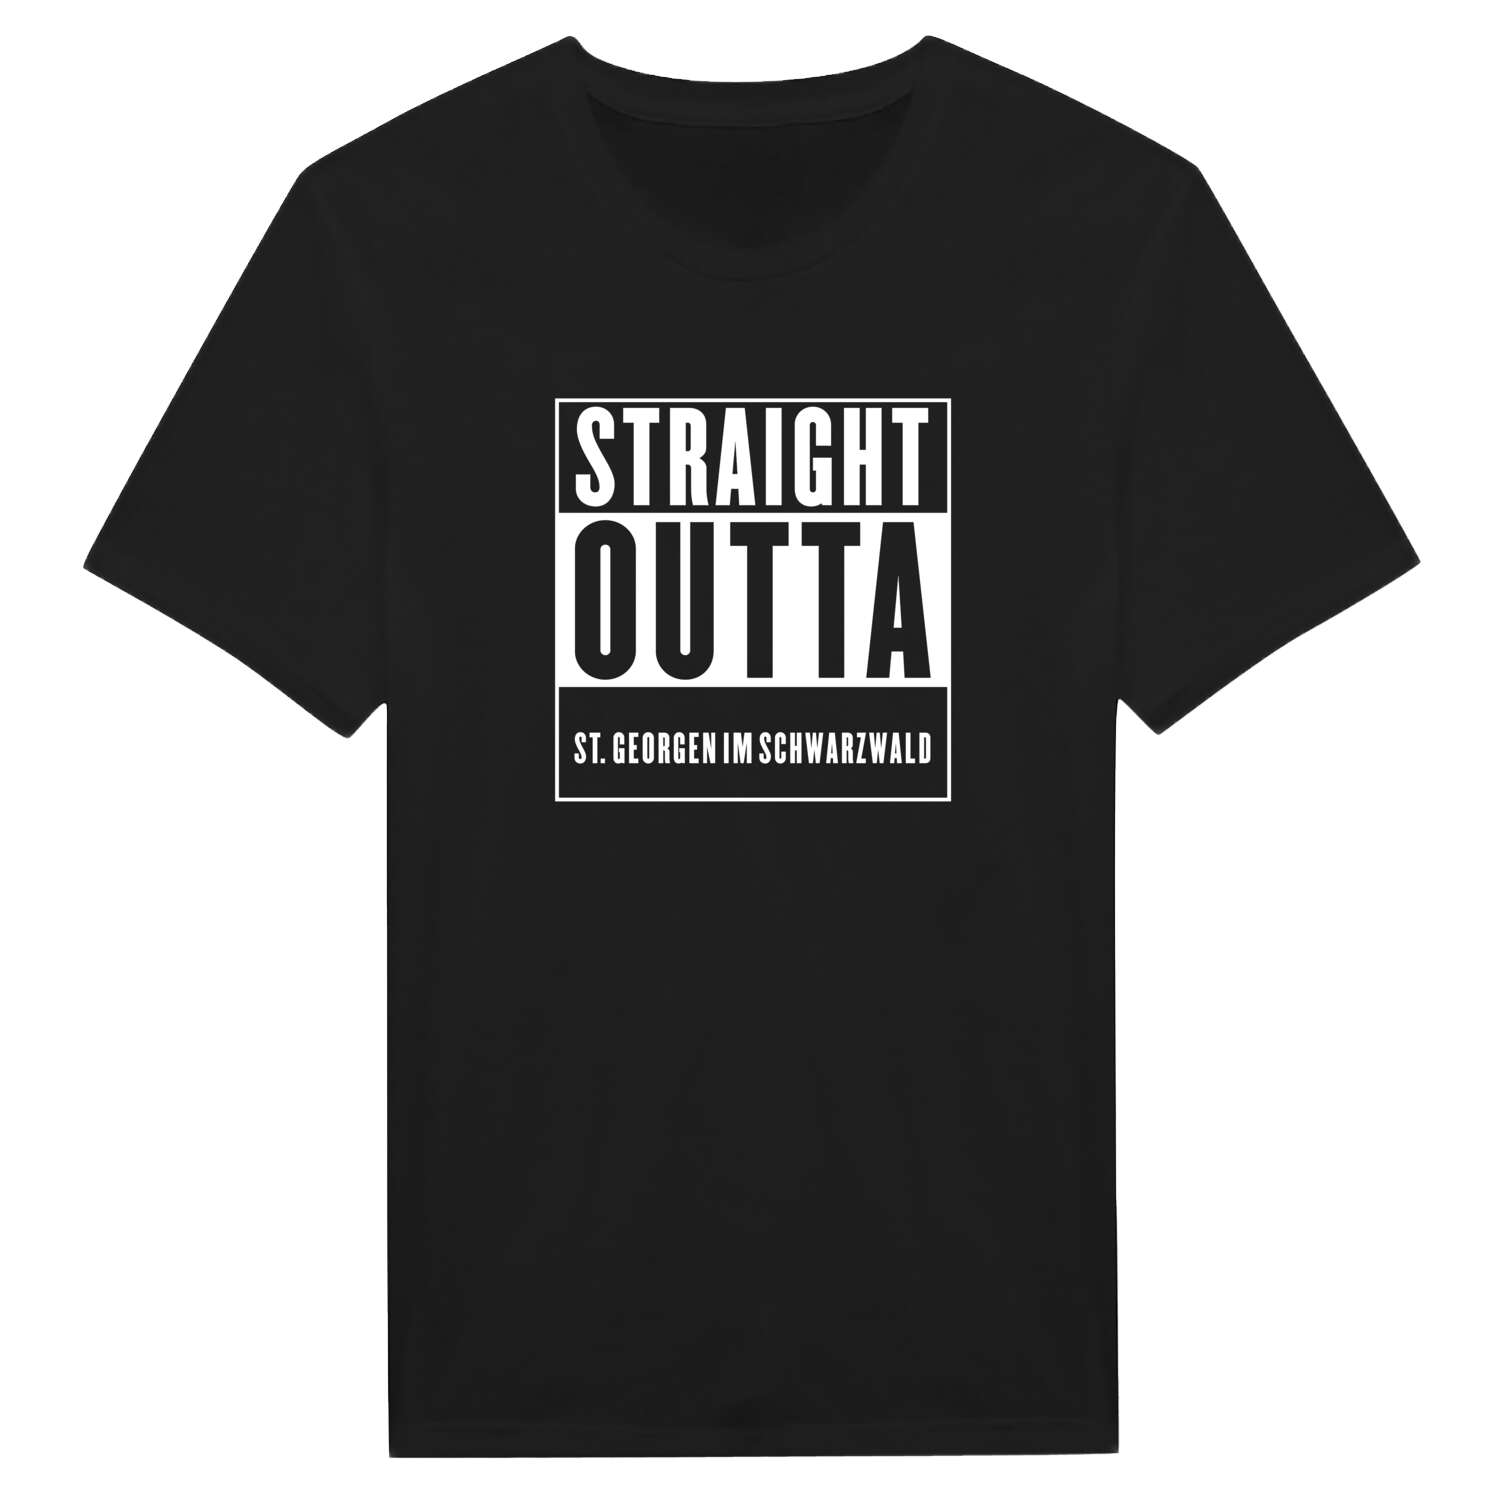 St. Georgen im Schwarzwald T-Shirt »Straight Outta«